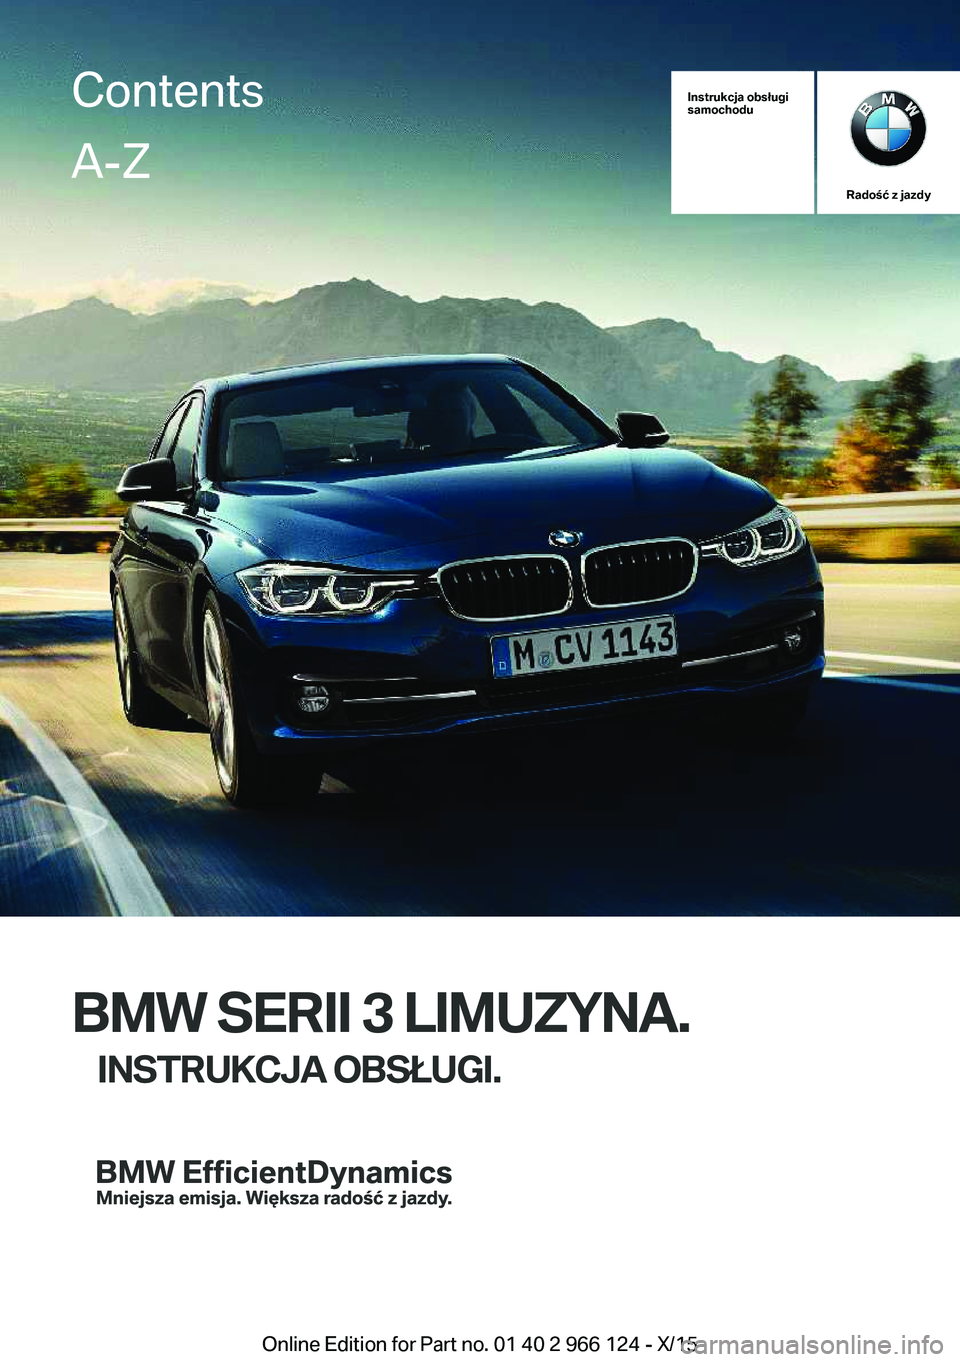 BMW 3 SERIES 2016  Instrukcja obsługi (in Polish) Instrukcja obsługi
samochodu
Radość z jazdy
BMW SERII 3 LIMUZYNA.
INSTRUKCJA OBSŁUGI.
ContentsA-Z
Online Edition for Part no. 01 40 2 966 124 - X/15   